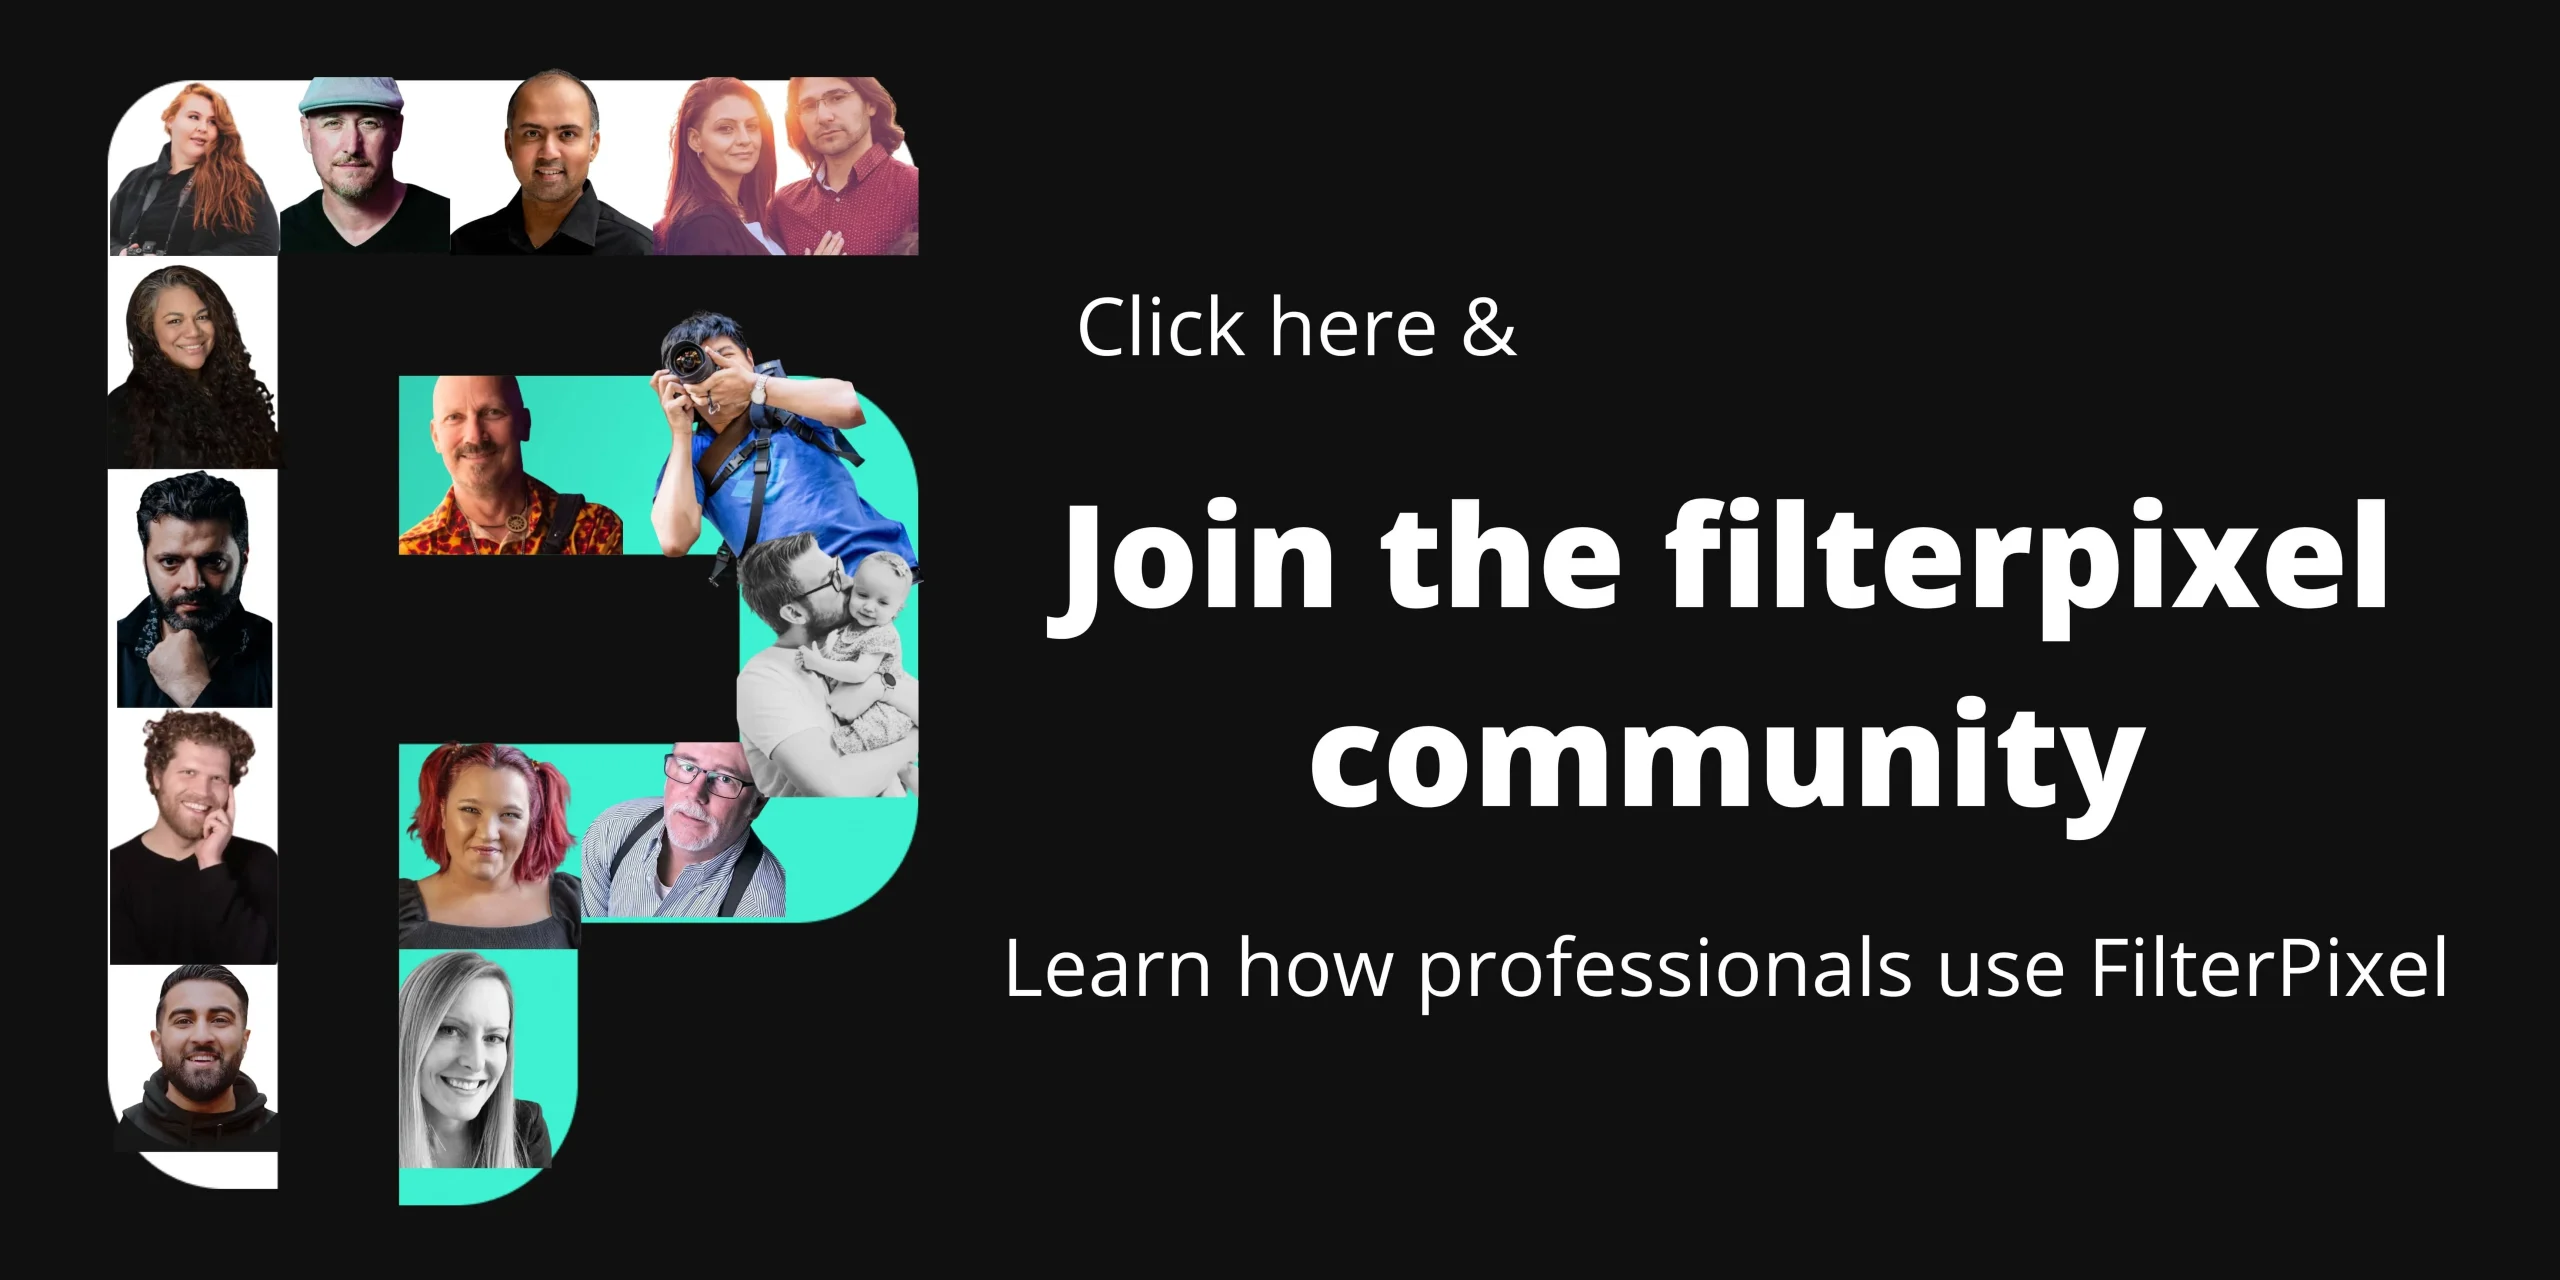 Filter Pixel community Image Banner